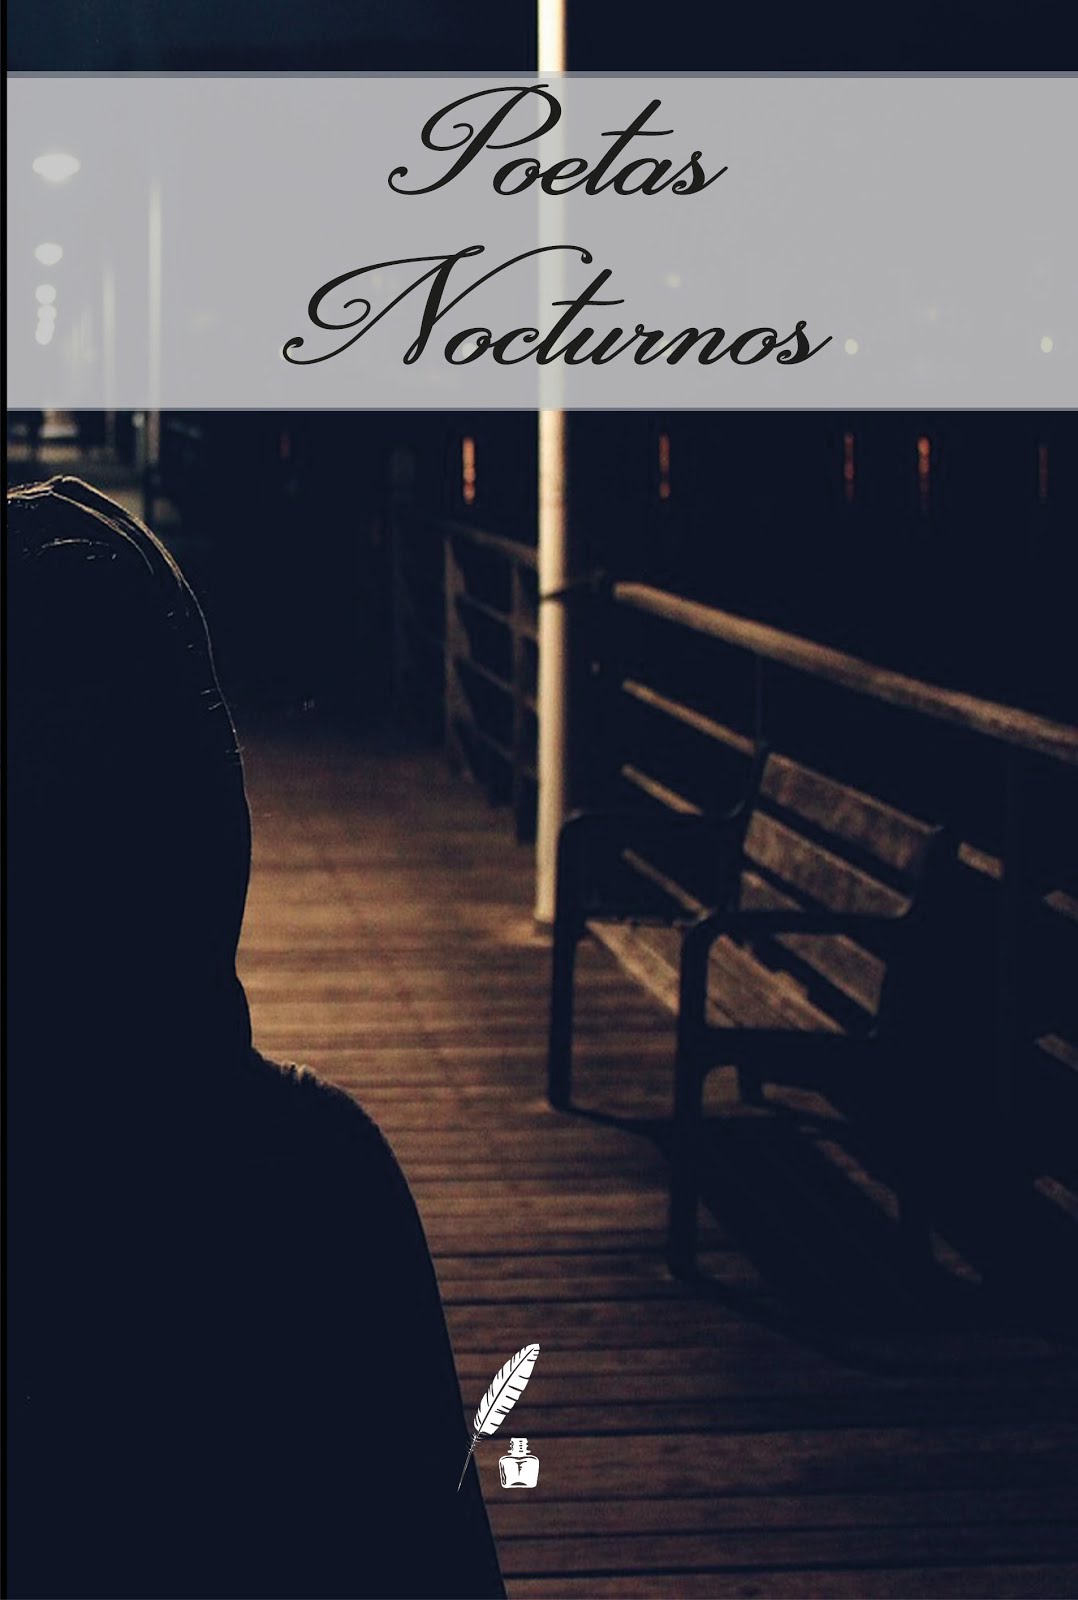 "Poetas Nocturnos"